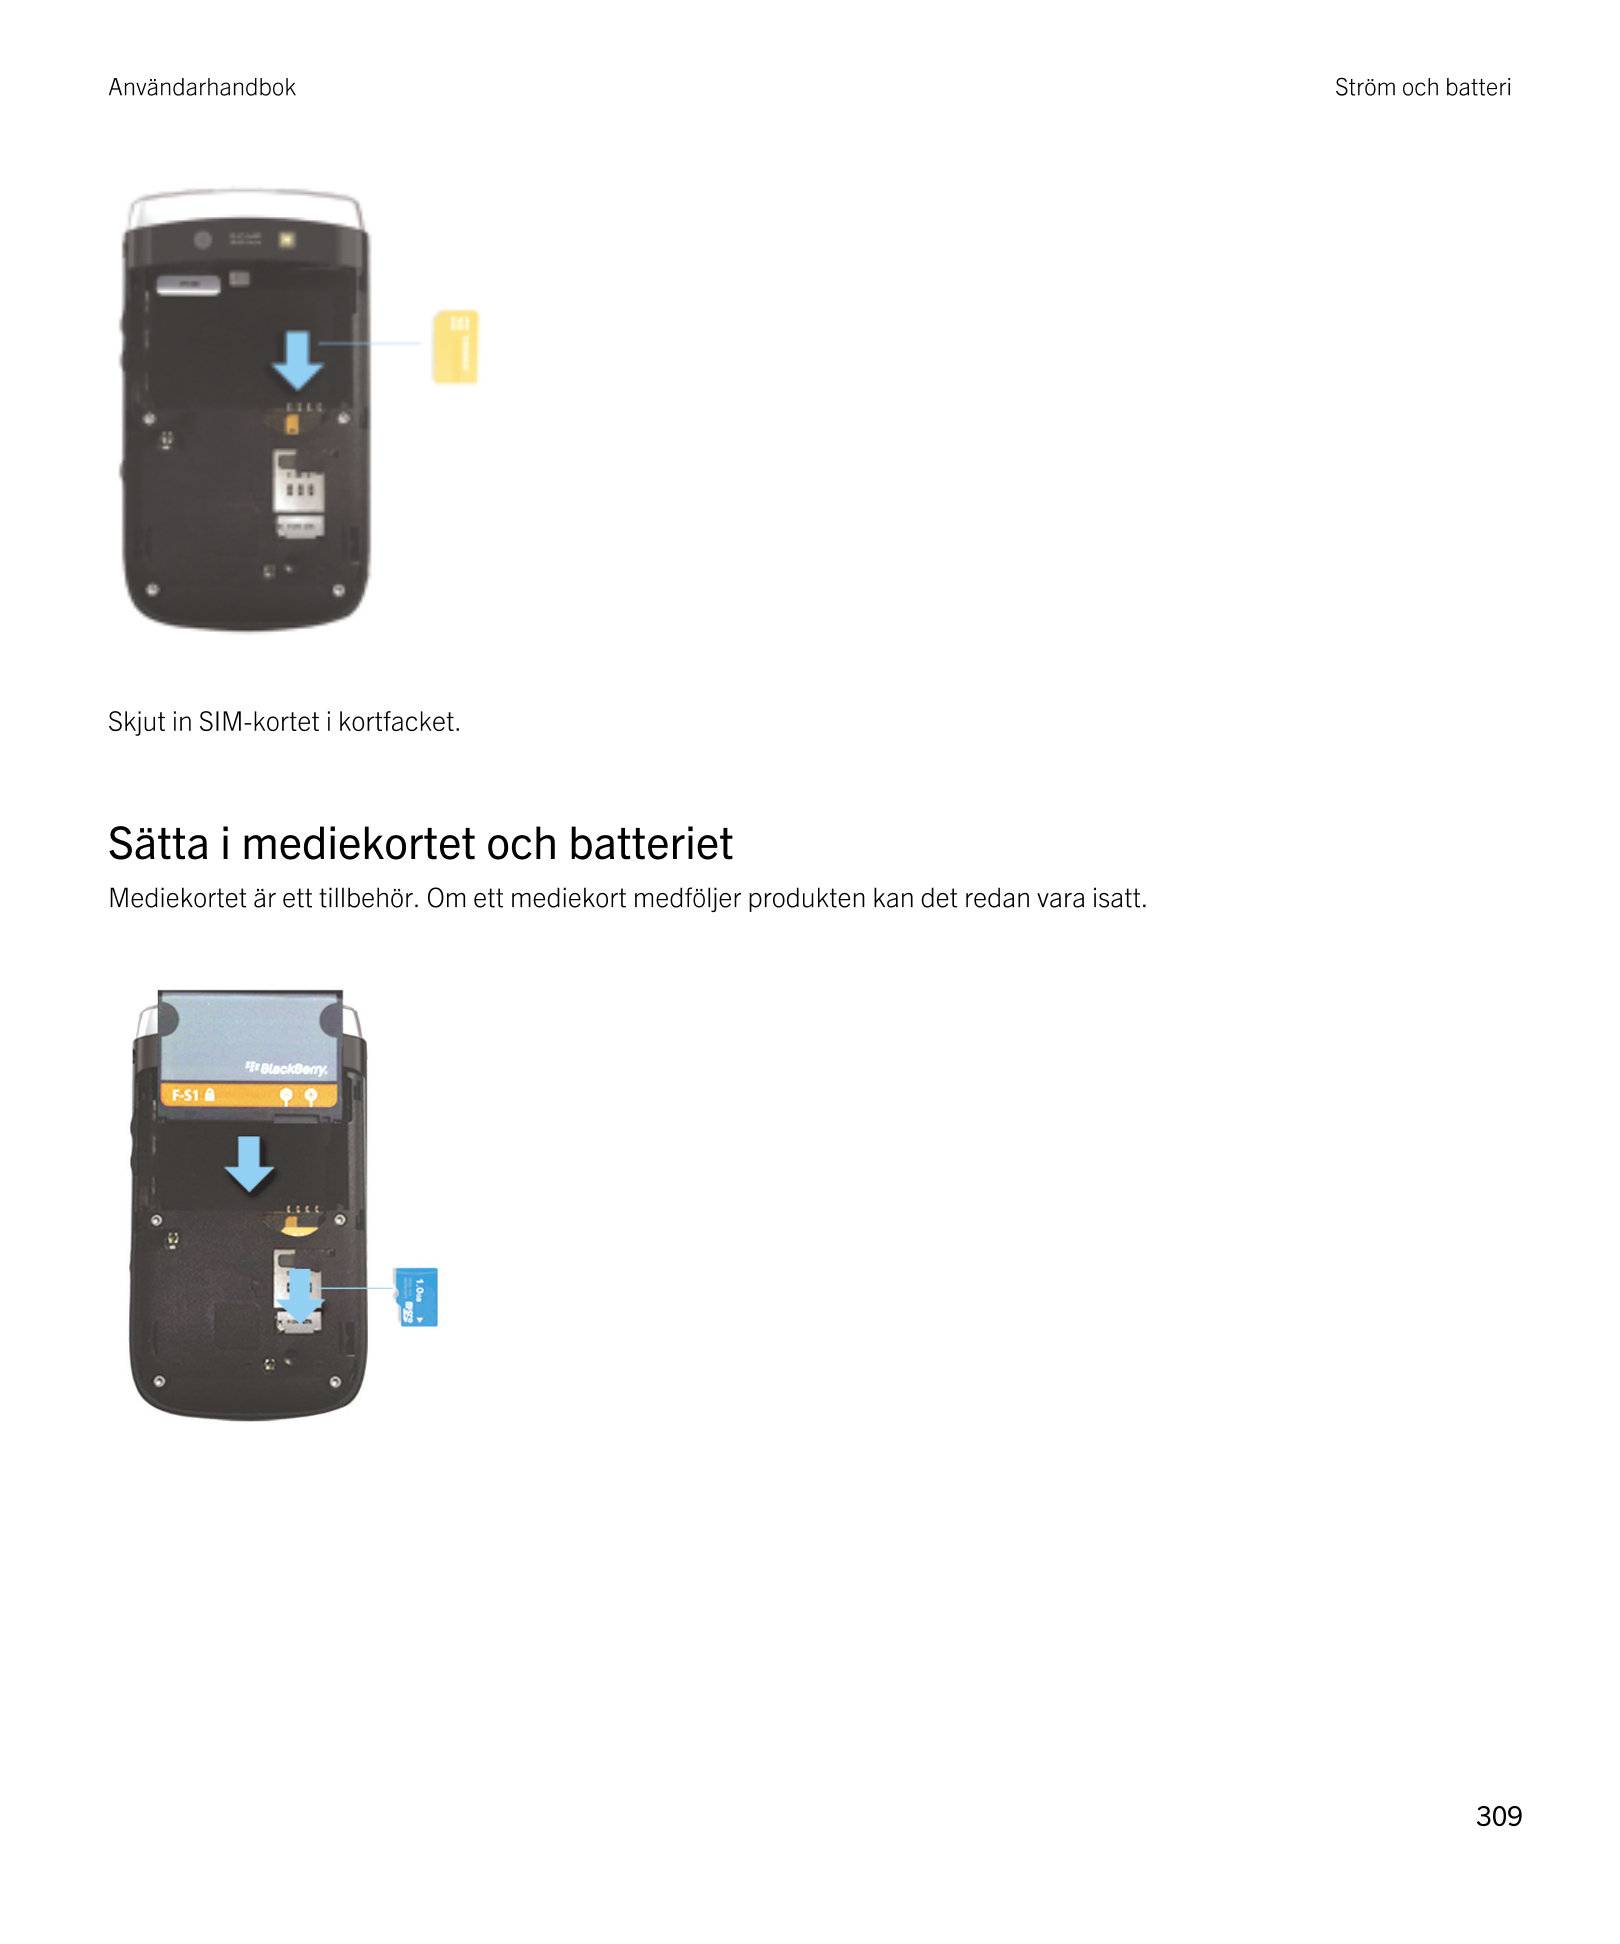 Användarhandbok Ström och batteri
Skjut in SIM-kortet i kortfacket.
Sätta i mediekortet och batteriet
Mediekortet är ett tillbeh